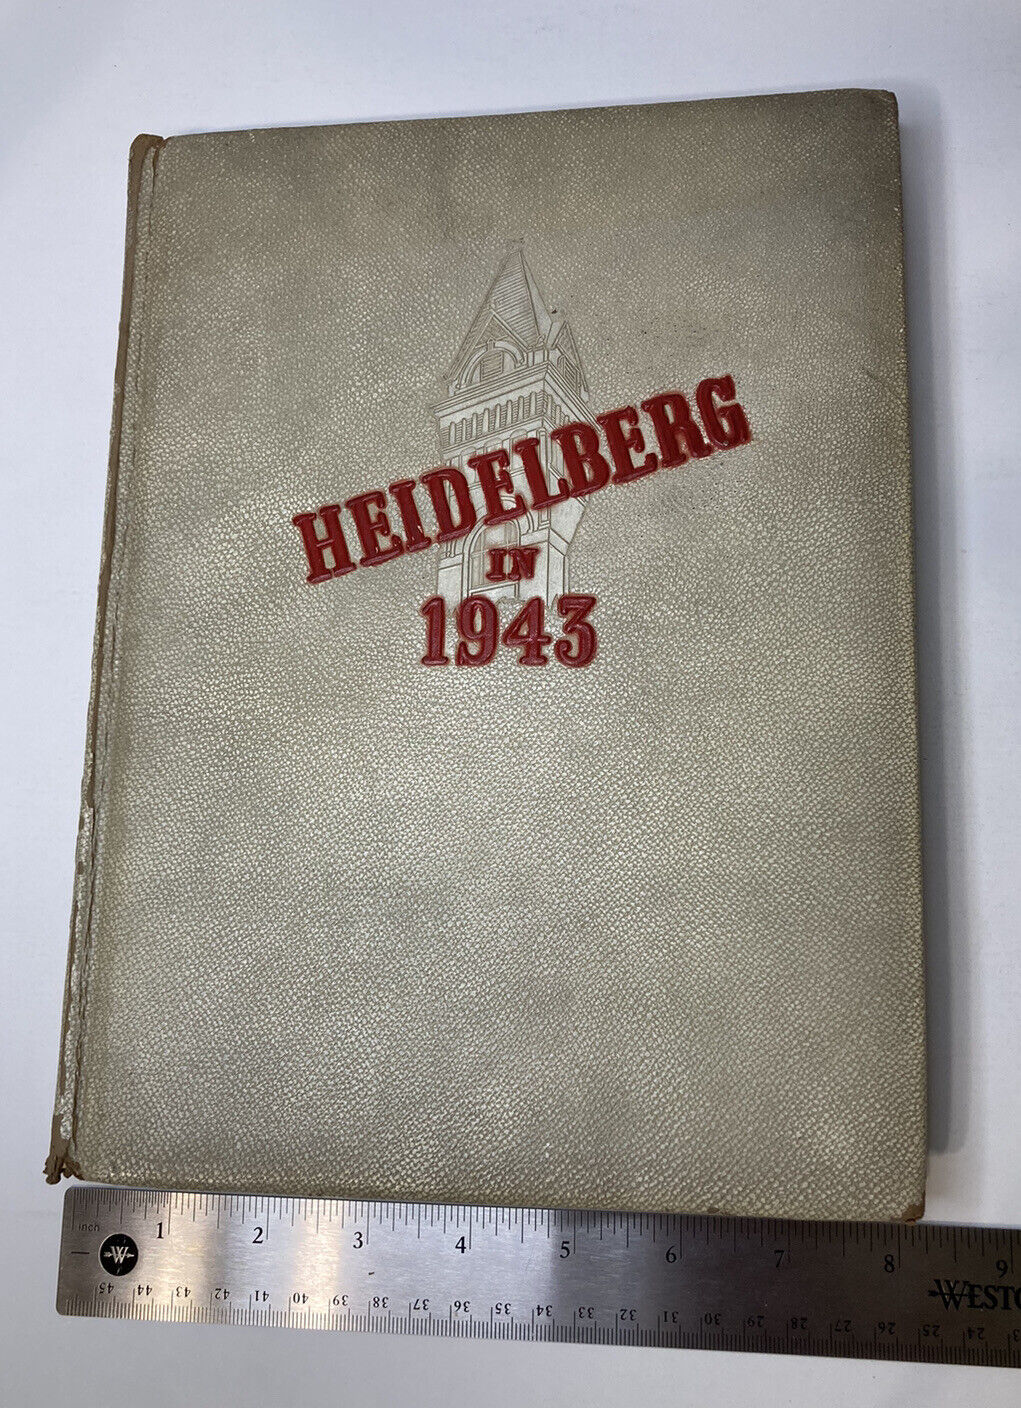 VINTAGE WW2 Era Yearbook Heidelberg In 1943 Aurora Ohio OH 8 x 11 Inches